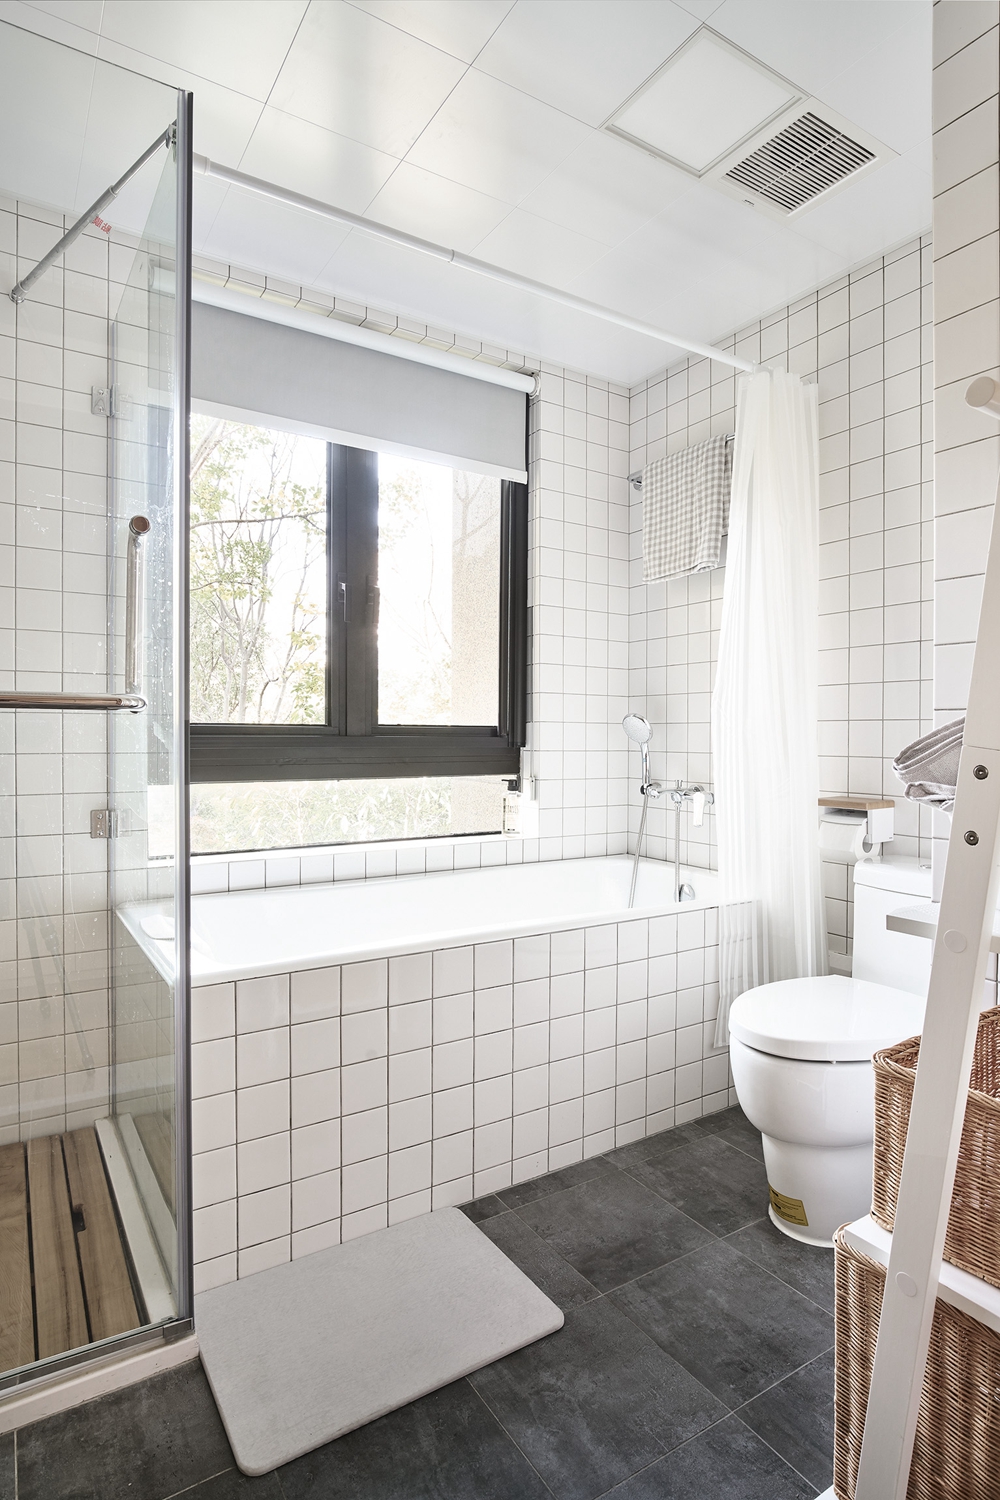 淋浴房一侧设计为浴缸，浴缸采用浴帘做干湿分离，让空间变得更加灵动。